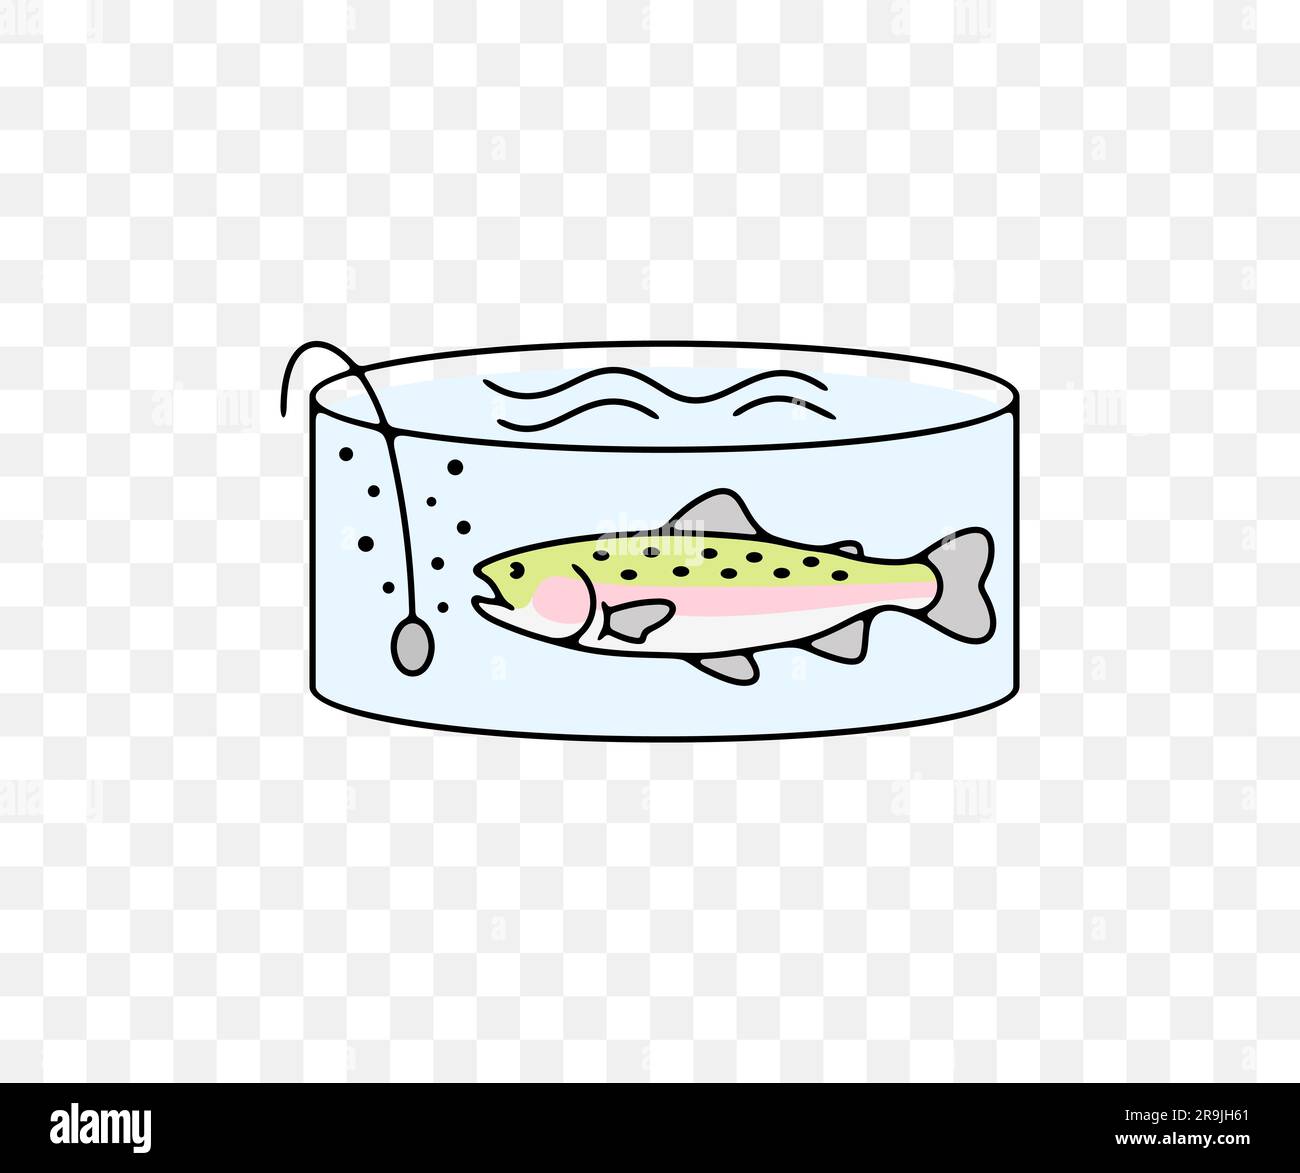 Fischzucht oder Fischzucht, Regenbogenforelle im gefilterten Pool, farbiges Grafikdesign. Fisch, Fischerei, Tiere, Aquakultur, Fischzucht und Marikultur, vektor Stock Vektor